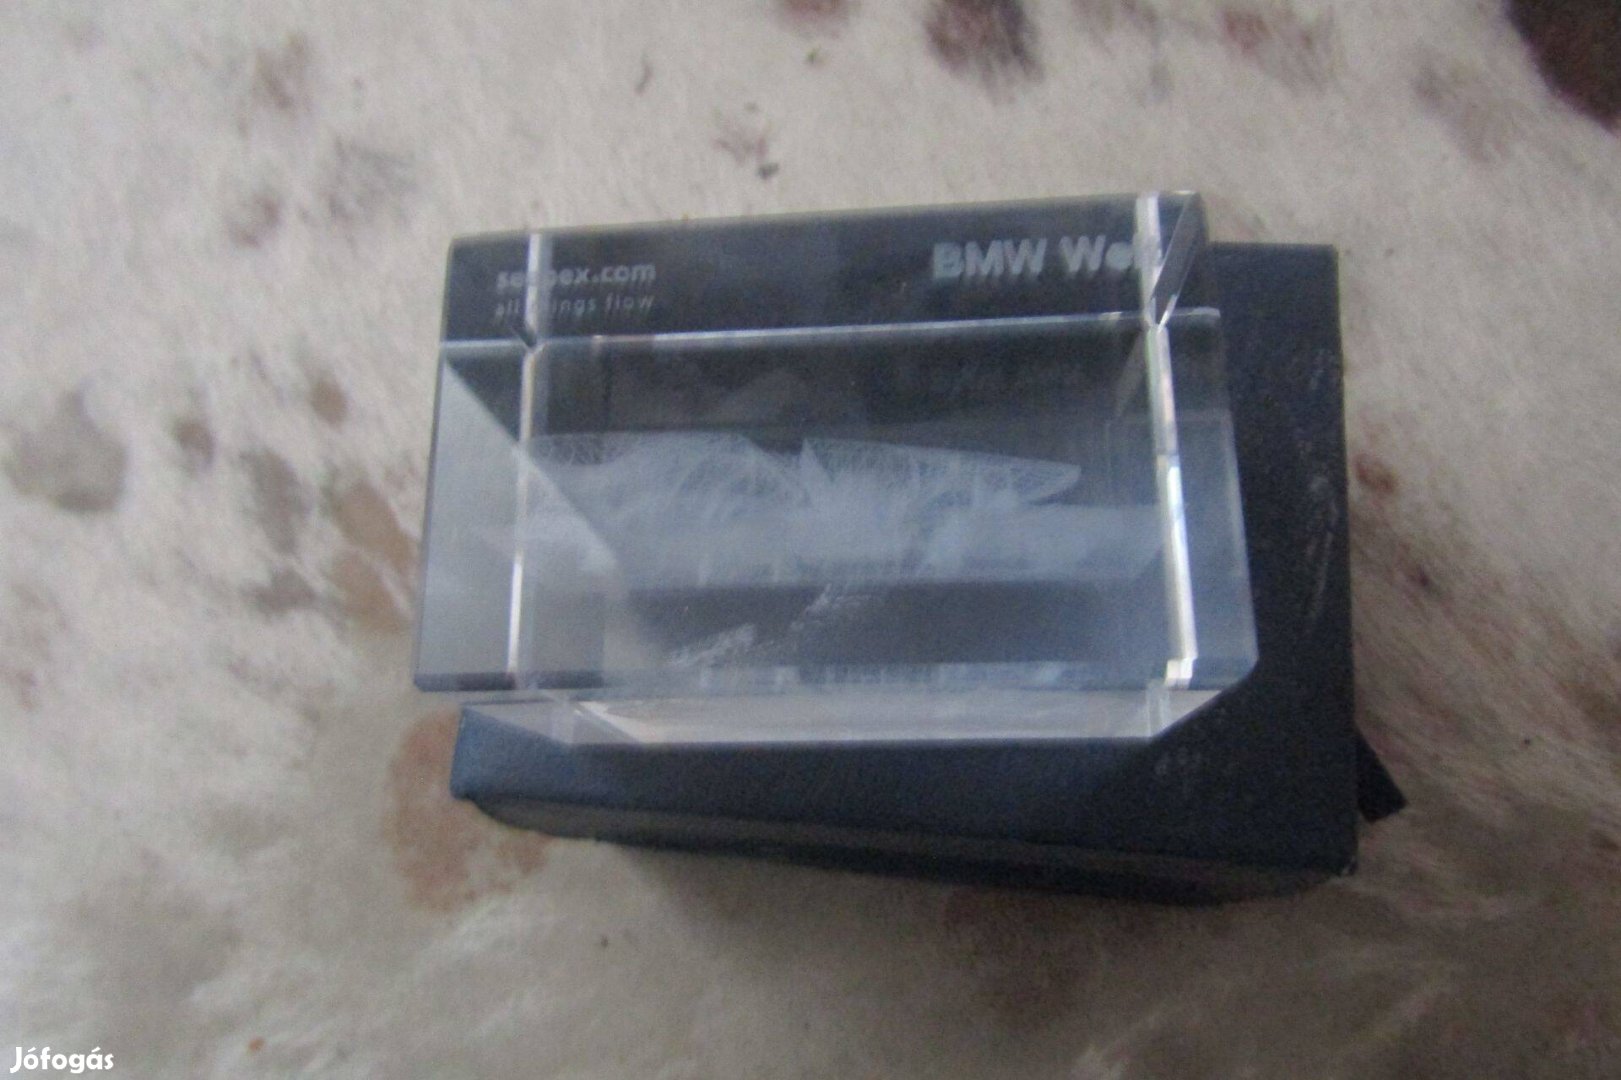 Gyűjtői BMW Welt üvegbe lévő építmény dobozában